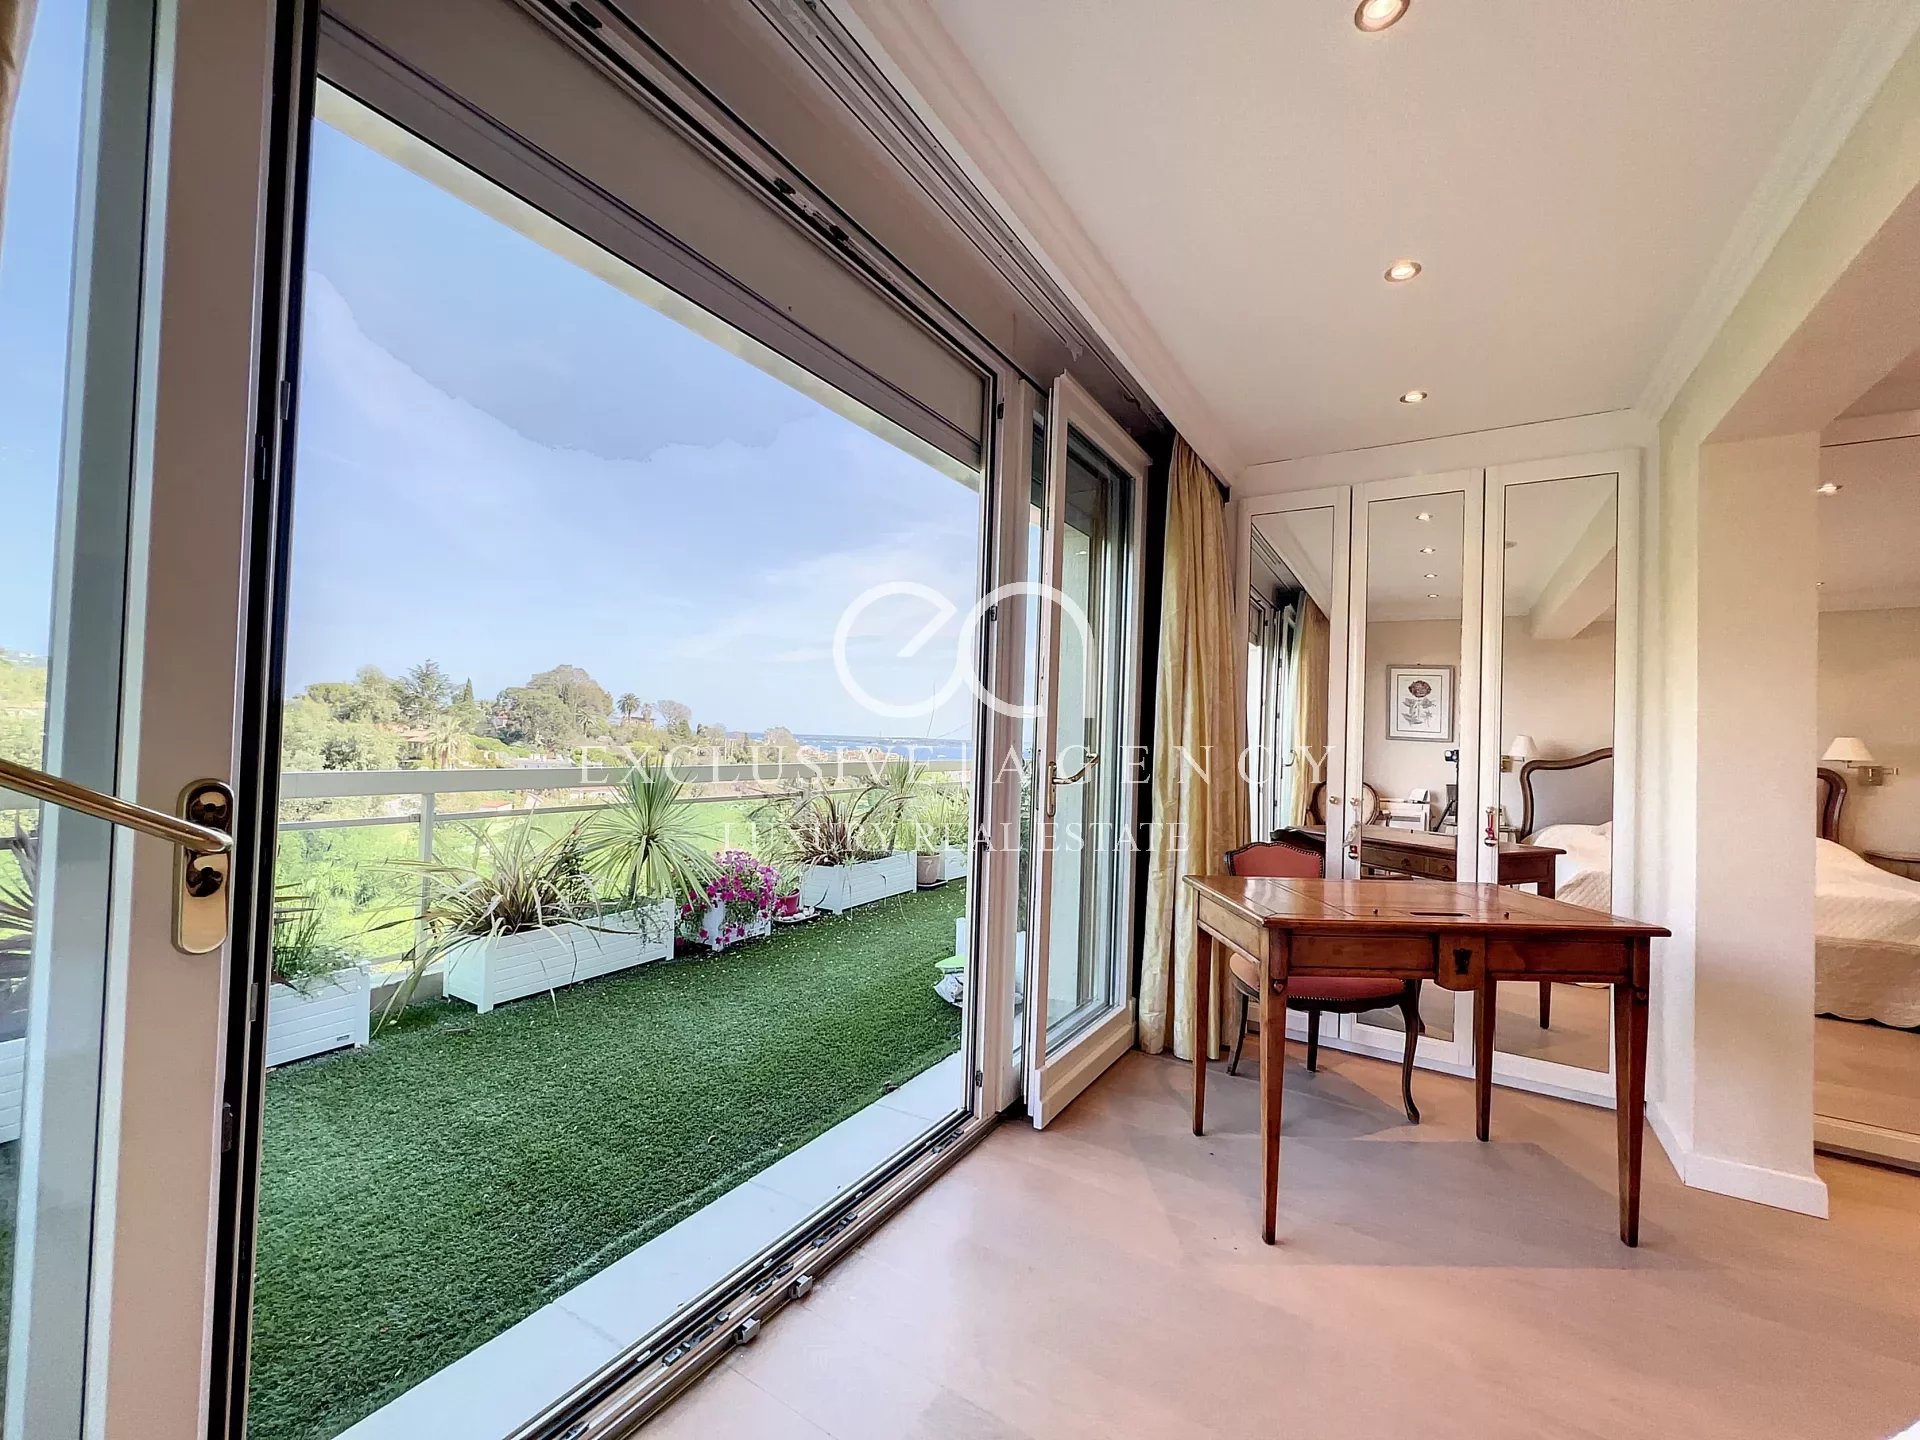 Cannes Verkauf Wohnung 3 Zimmer 148m² Terrasse 50m² Meerblick